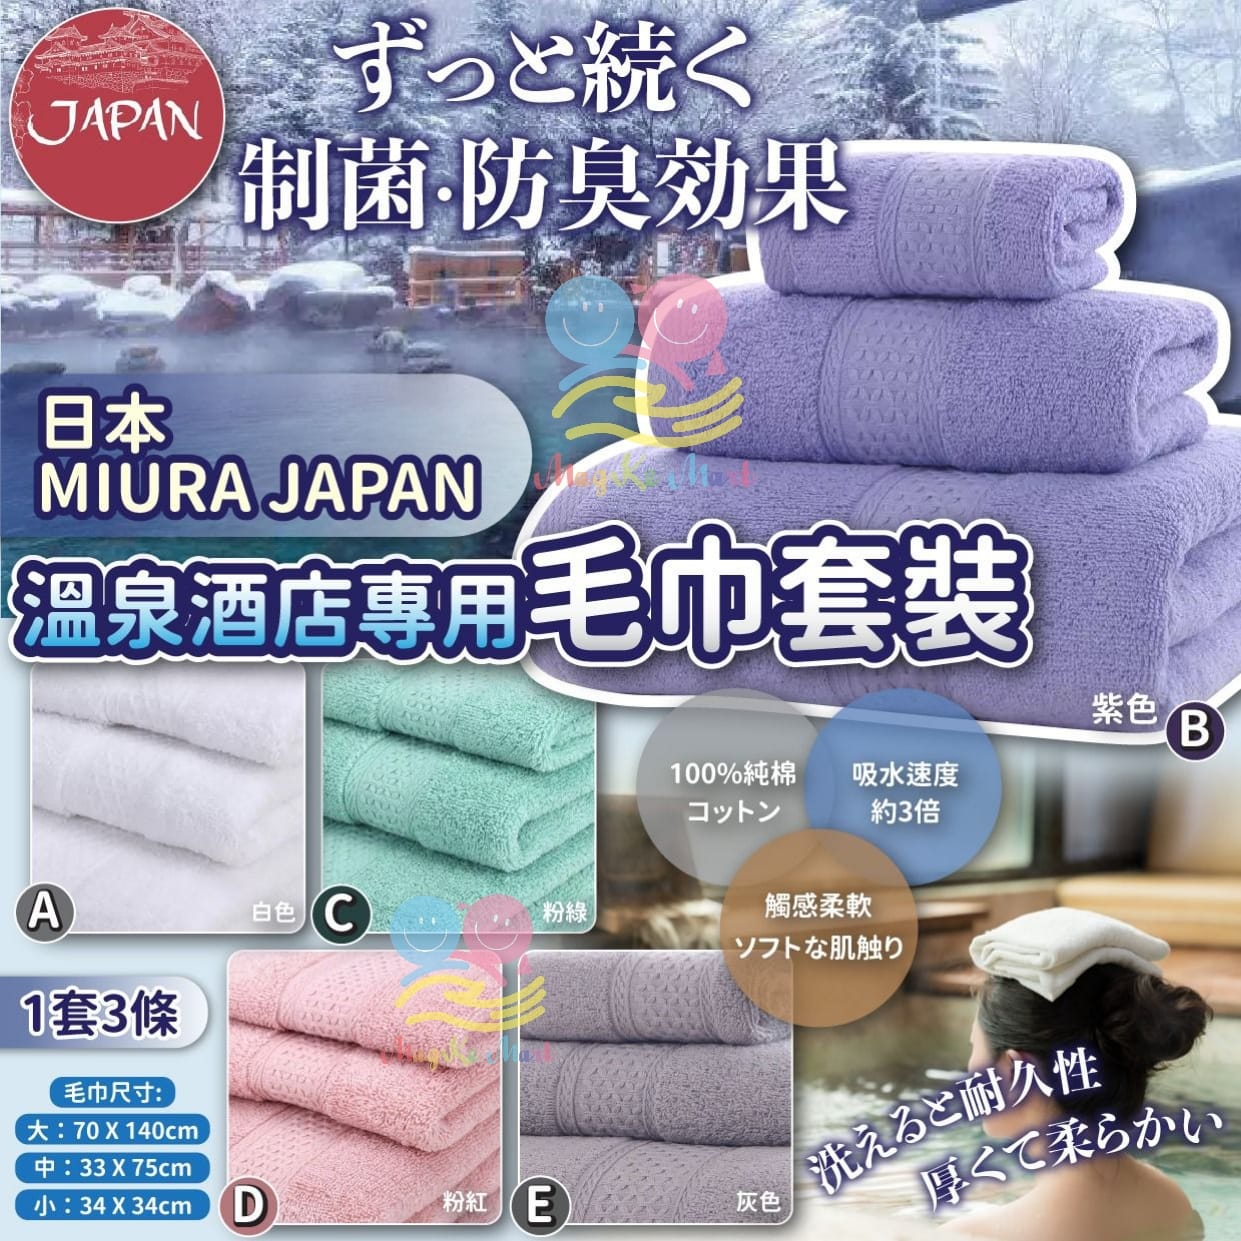 日本 MIURA JAPAN 溫泉酒店專用毛巾套裝(1套3條)(NEW)